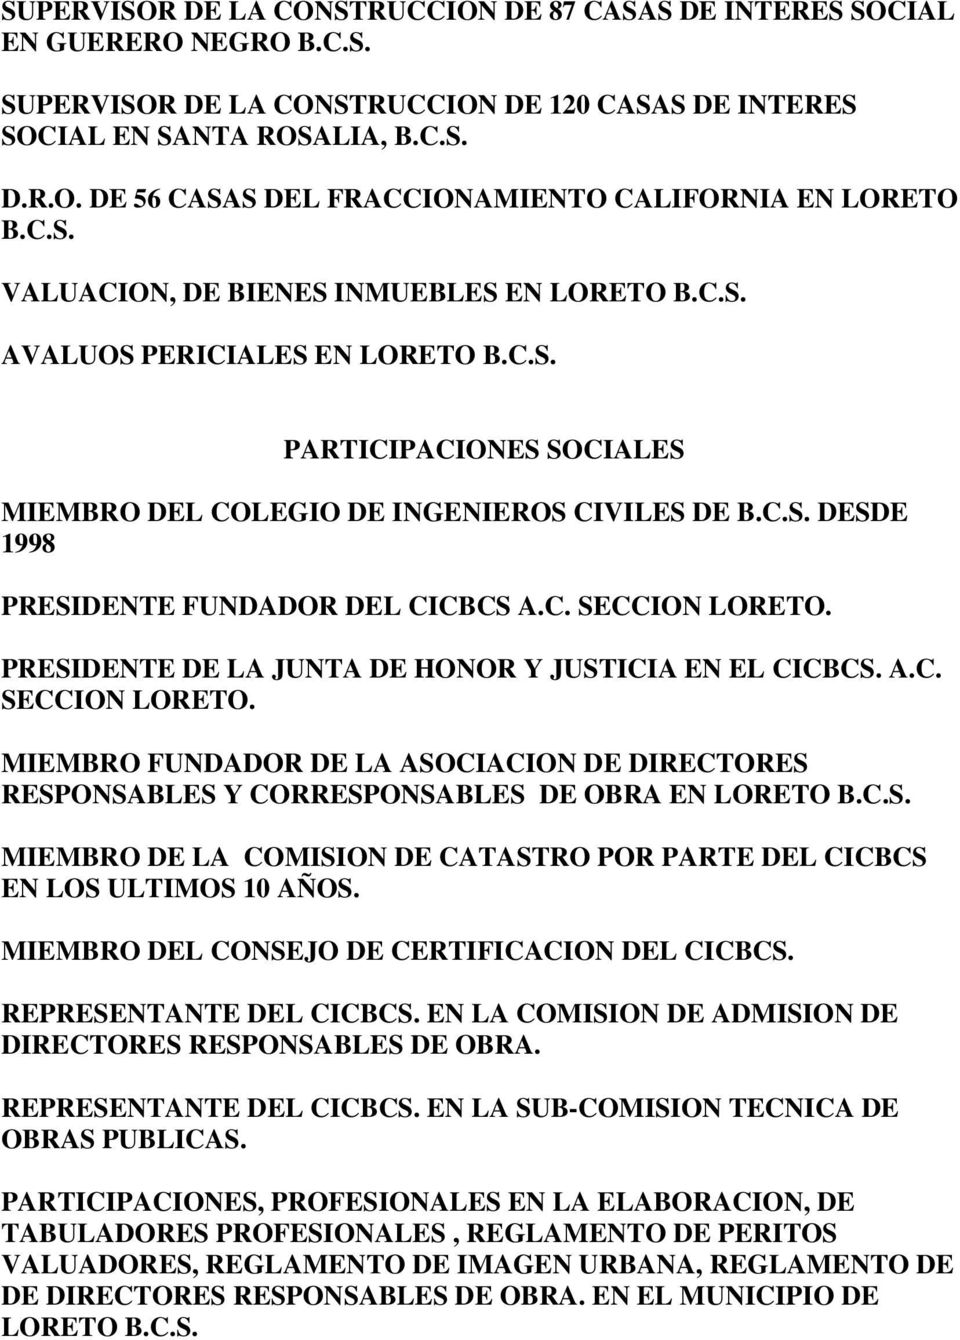 C. SECCION LORETO. PRESIDENTE DE LA JUNTA DE HONOR Y JUSTICIA EN EL CICBCS. A.C. SECCION LORETO. MIEMBRO FUNDADOR DE LA ASOCIACION DE DIRECTORES RESPONSABLES Y CORRESPONSABLES DE OBRA EN LORETO B.C.S. MIEMBRO DE LA COMISION DE CATASTRO POR PARTE DEL CICBCS EN LOS ULTIMOS 10 AÑOS.